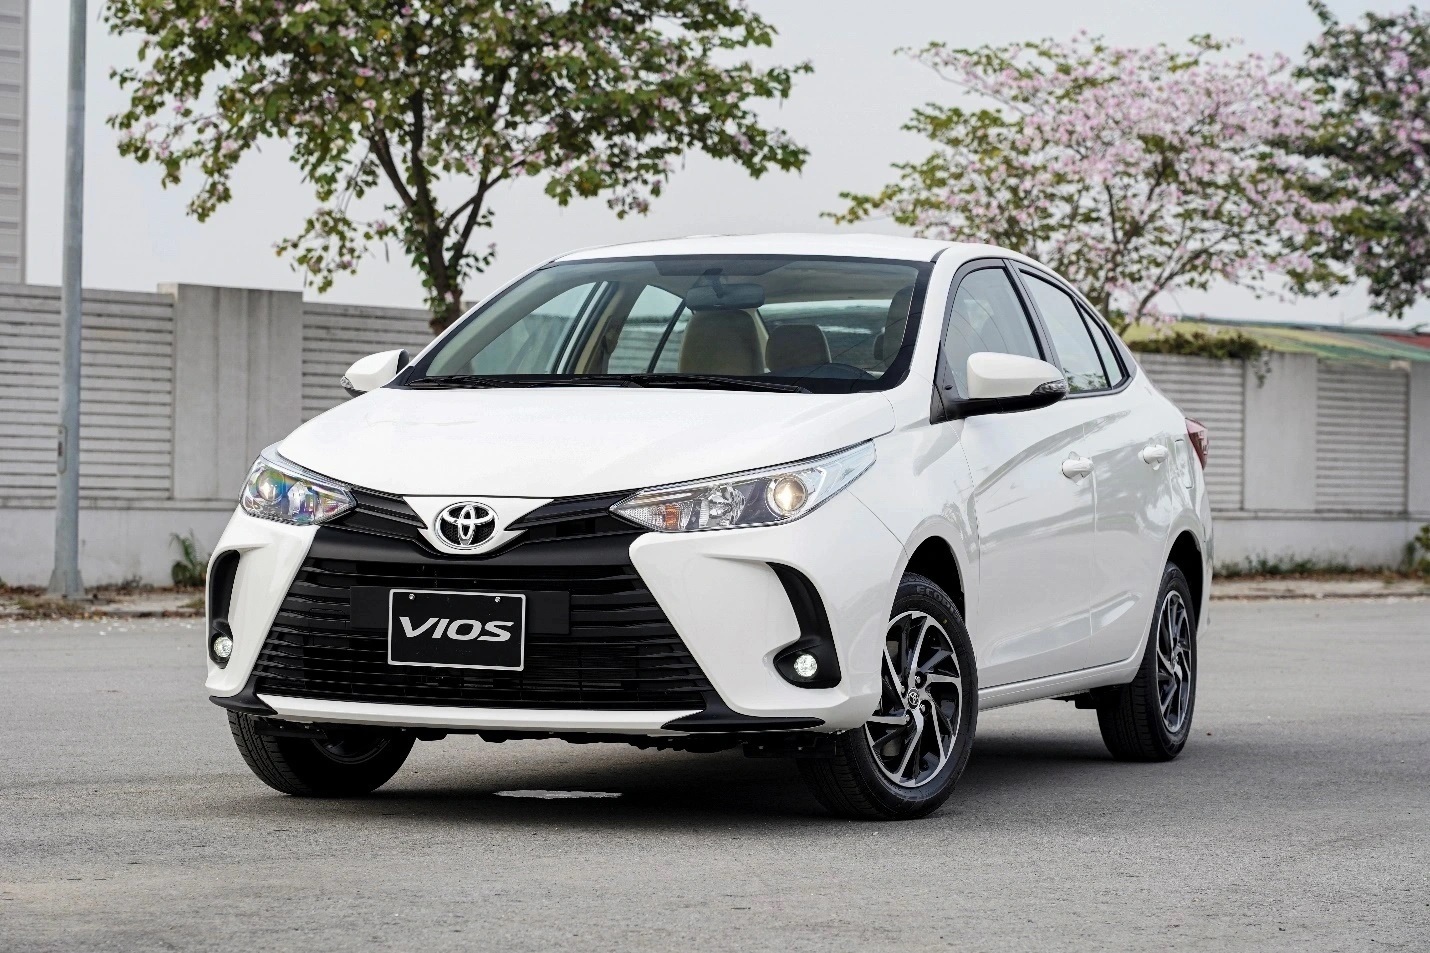 Hyundai Accent bán nhiều xe gấp đôi Toyota Vios trong tháng 2 - 2